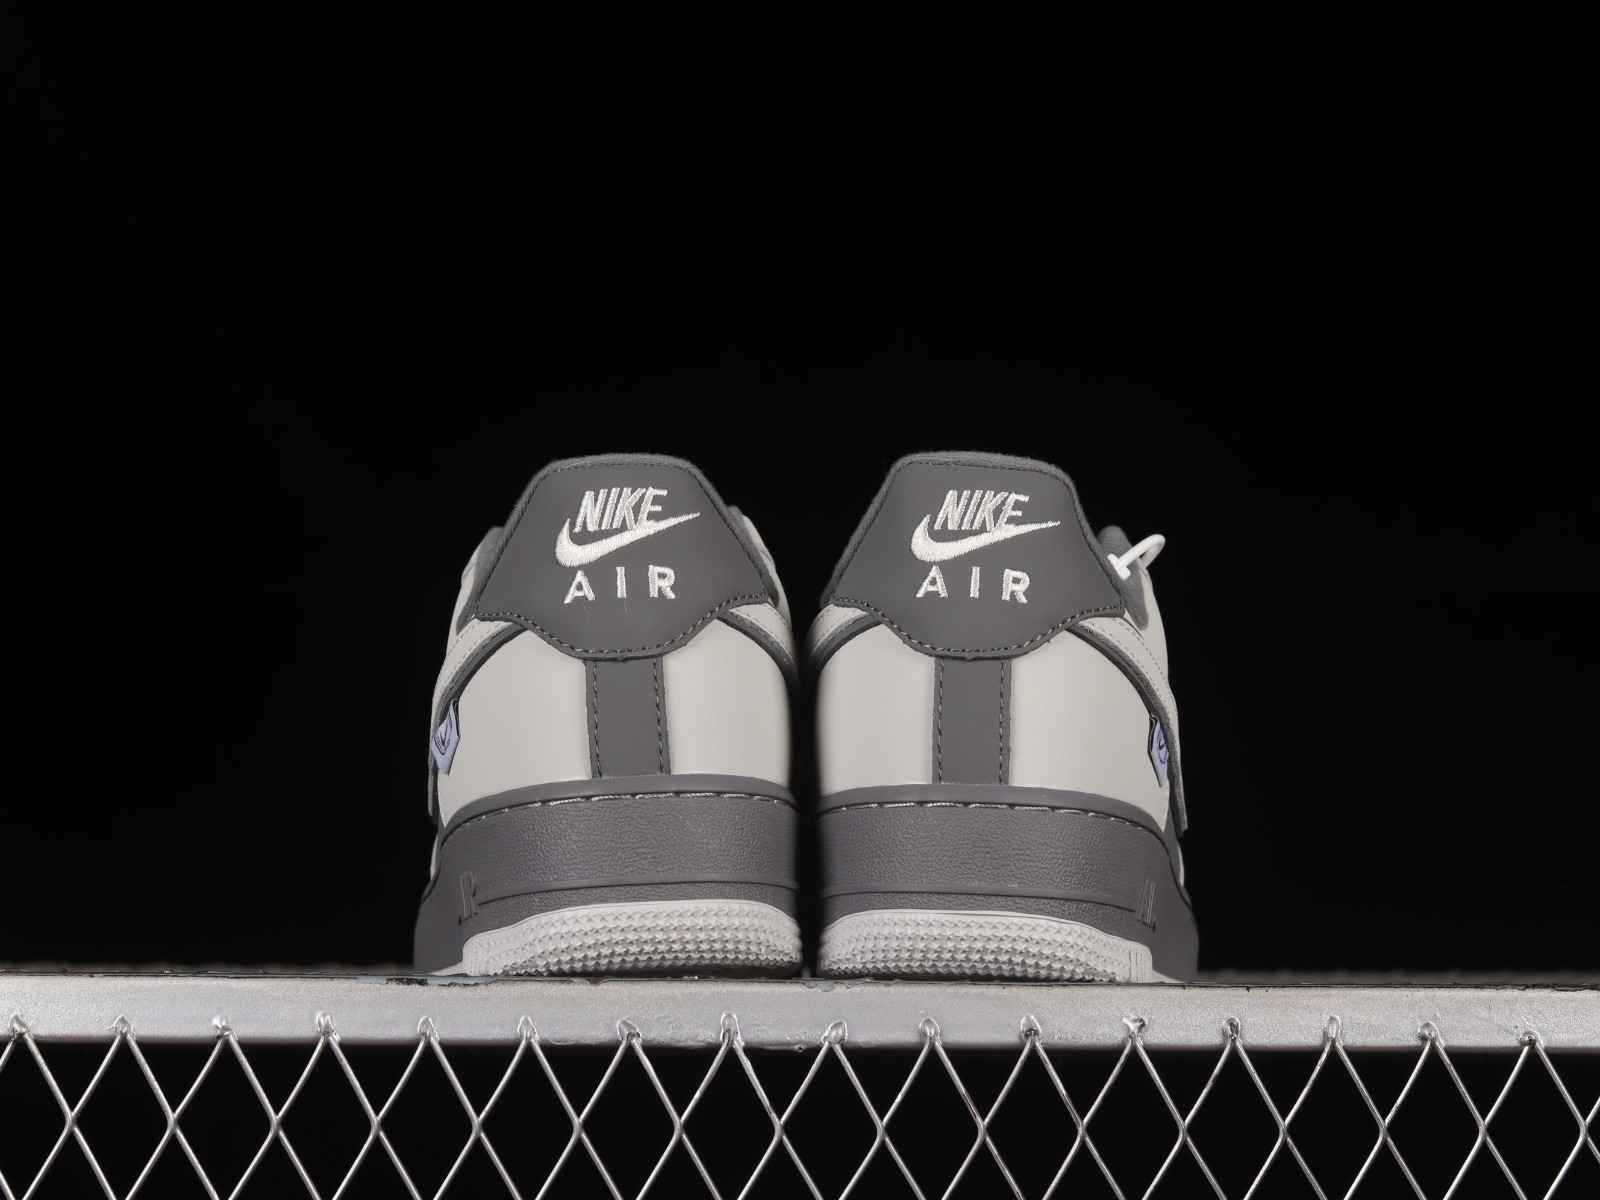 Nike Air Force 1 Low 07 LV8 White Metallic Dark Grey